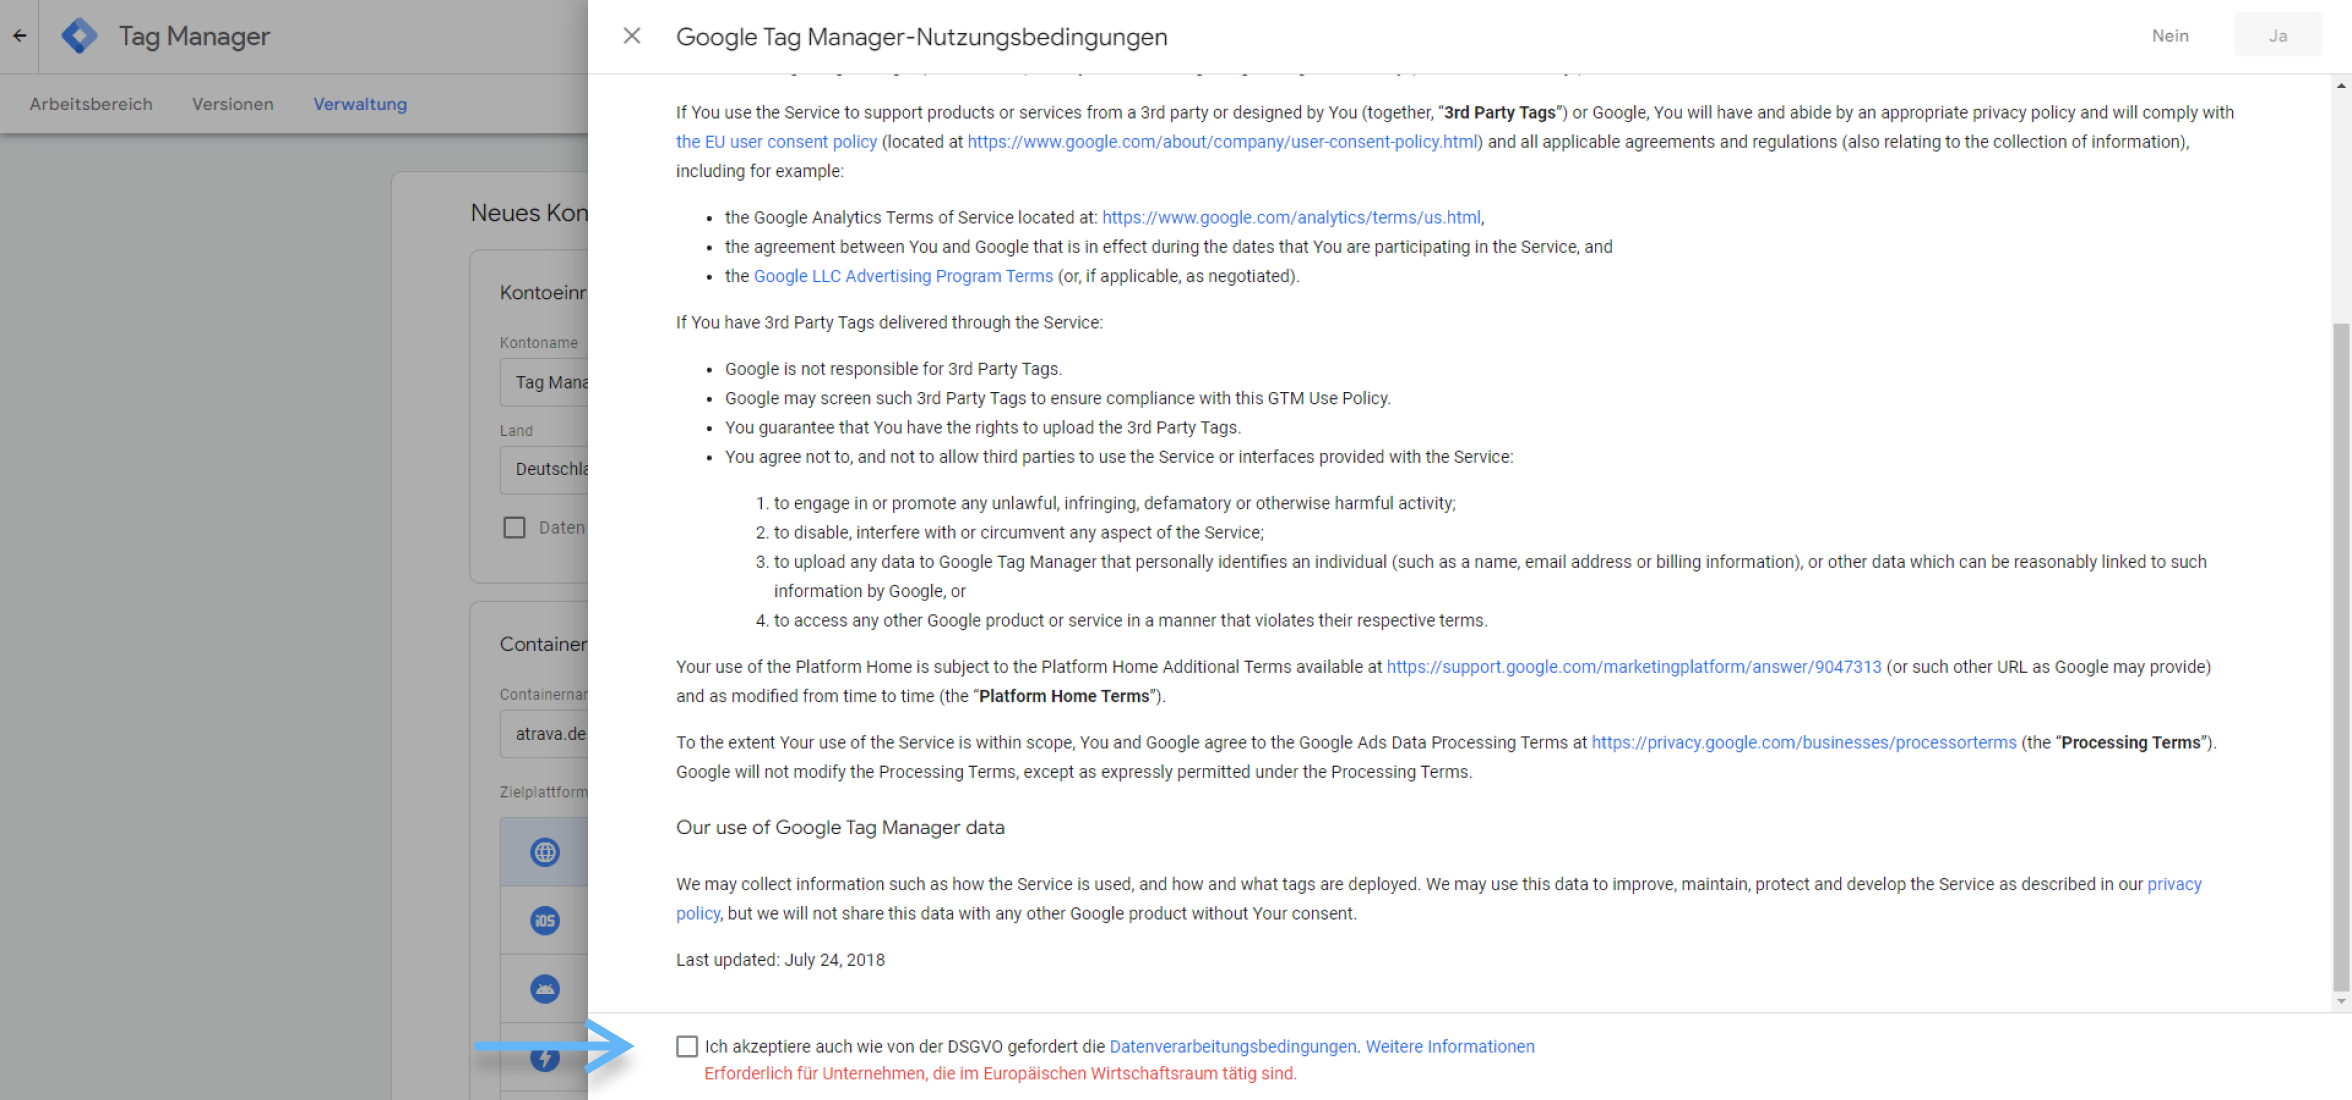 atrava - Google Tag Manager Anleitung - Nutzungsbedingungen zustimmen